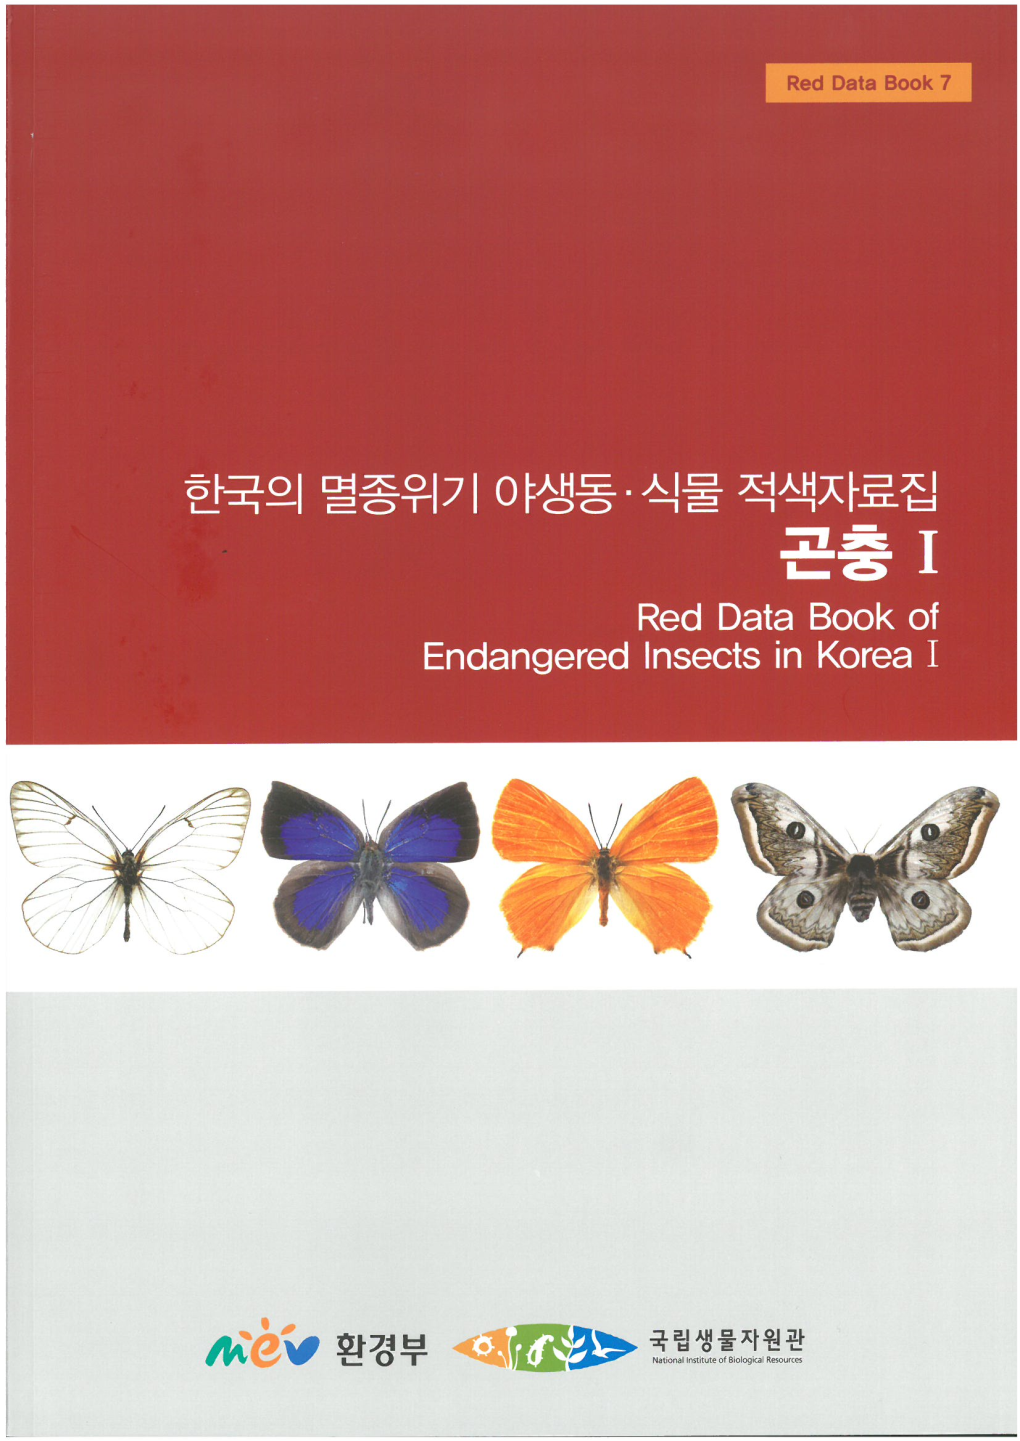 한국의 멸종위기 야생동·식물 적색자료집 곤 충 I Red Data Book of Endangered Insects in Korea I 발간사